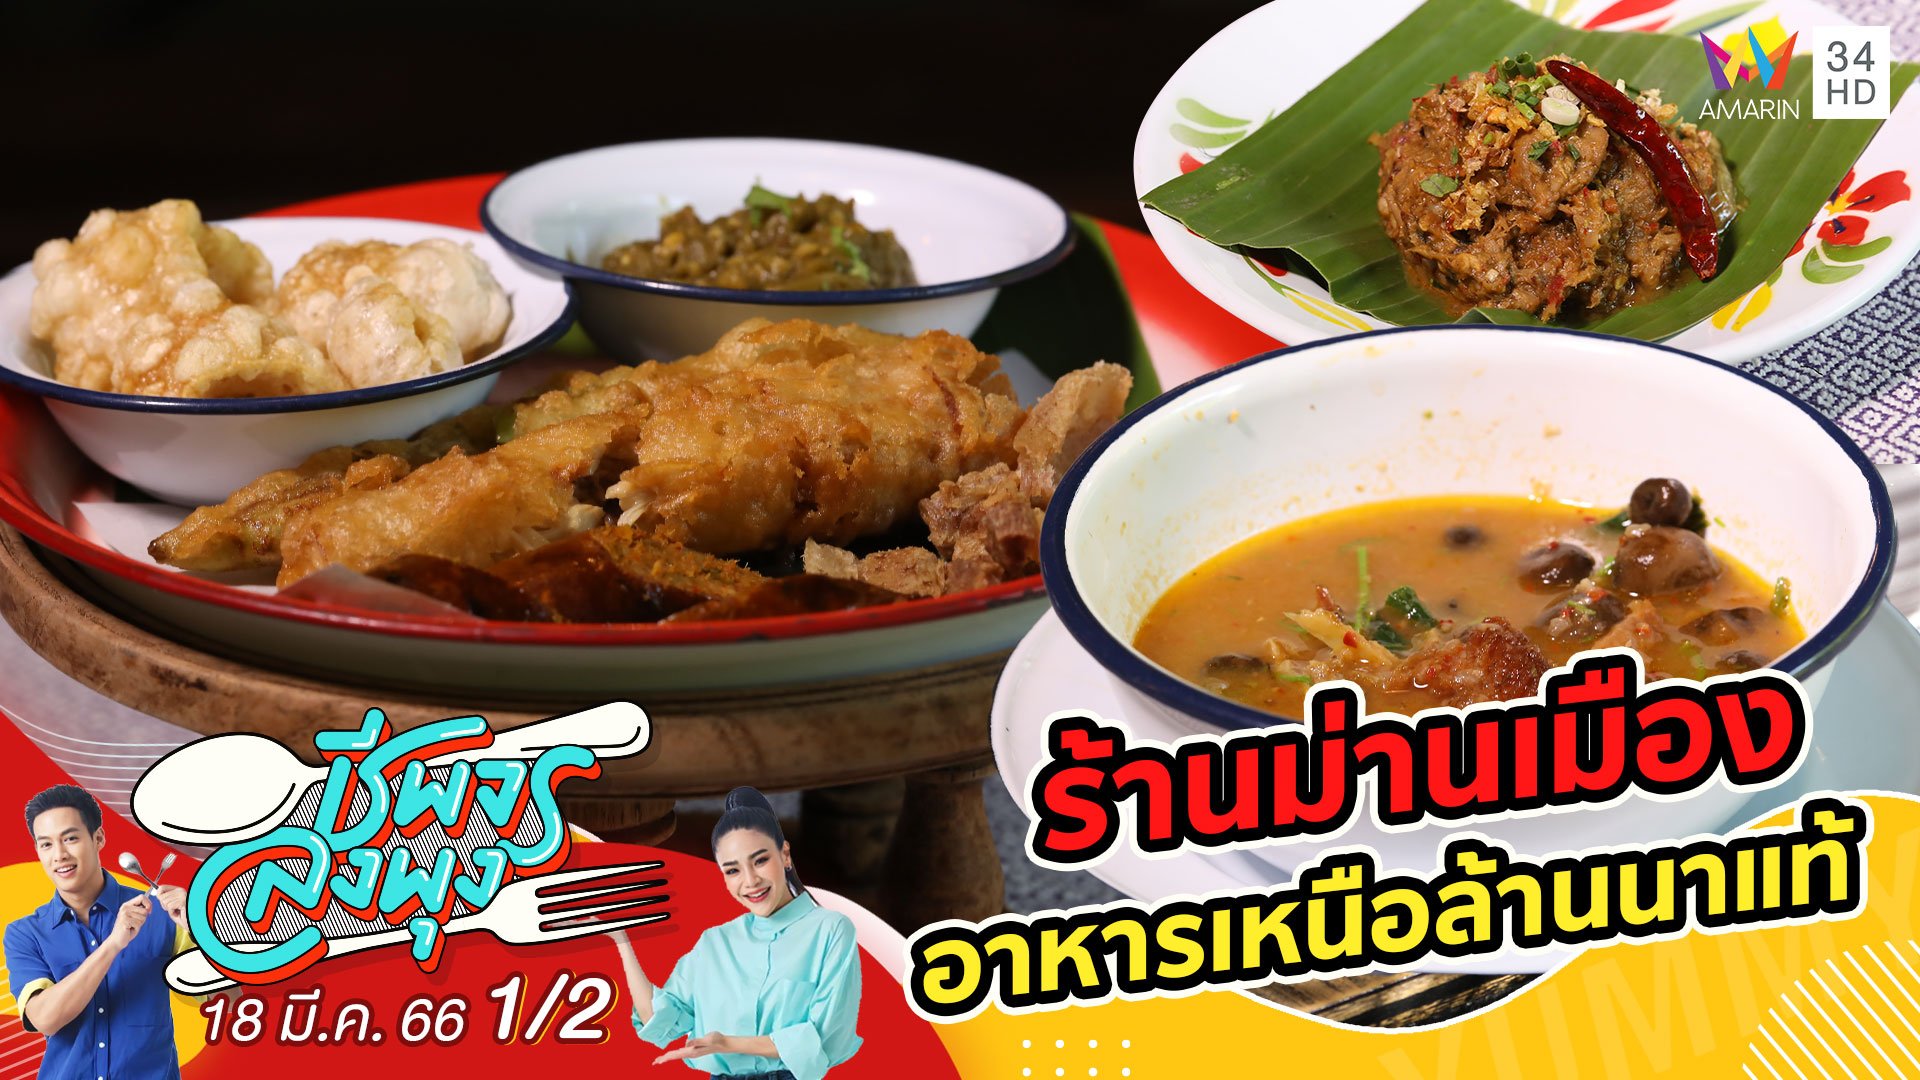 อาหารเหนือรสชาติล้านนาแท้ @ ร้านม่านเมือง | ชีพจรลงพุง | 18 มี.ค. 66 (1/2) | AMARIN TVHD34